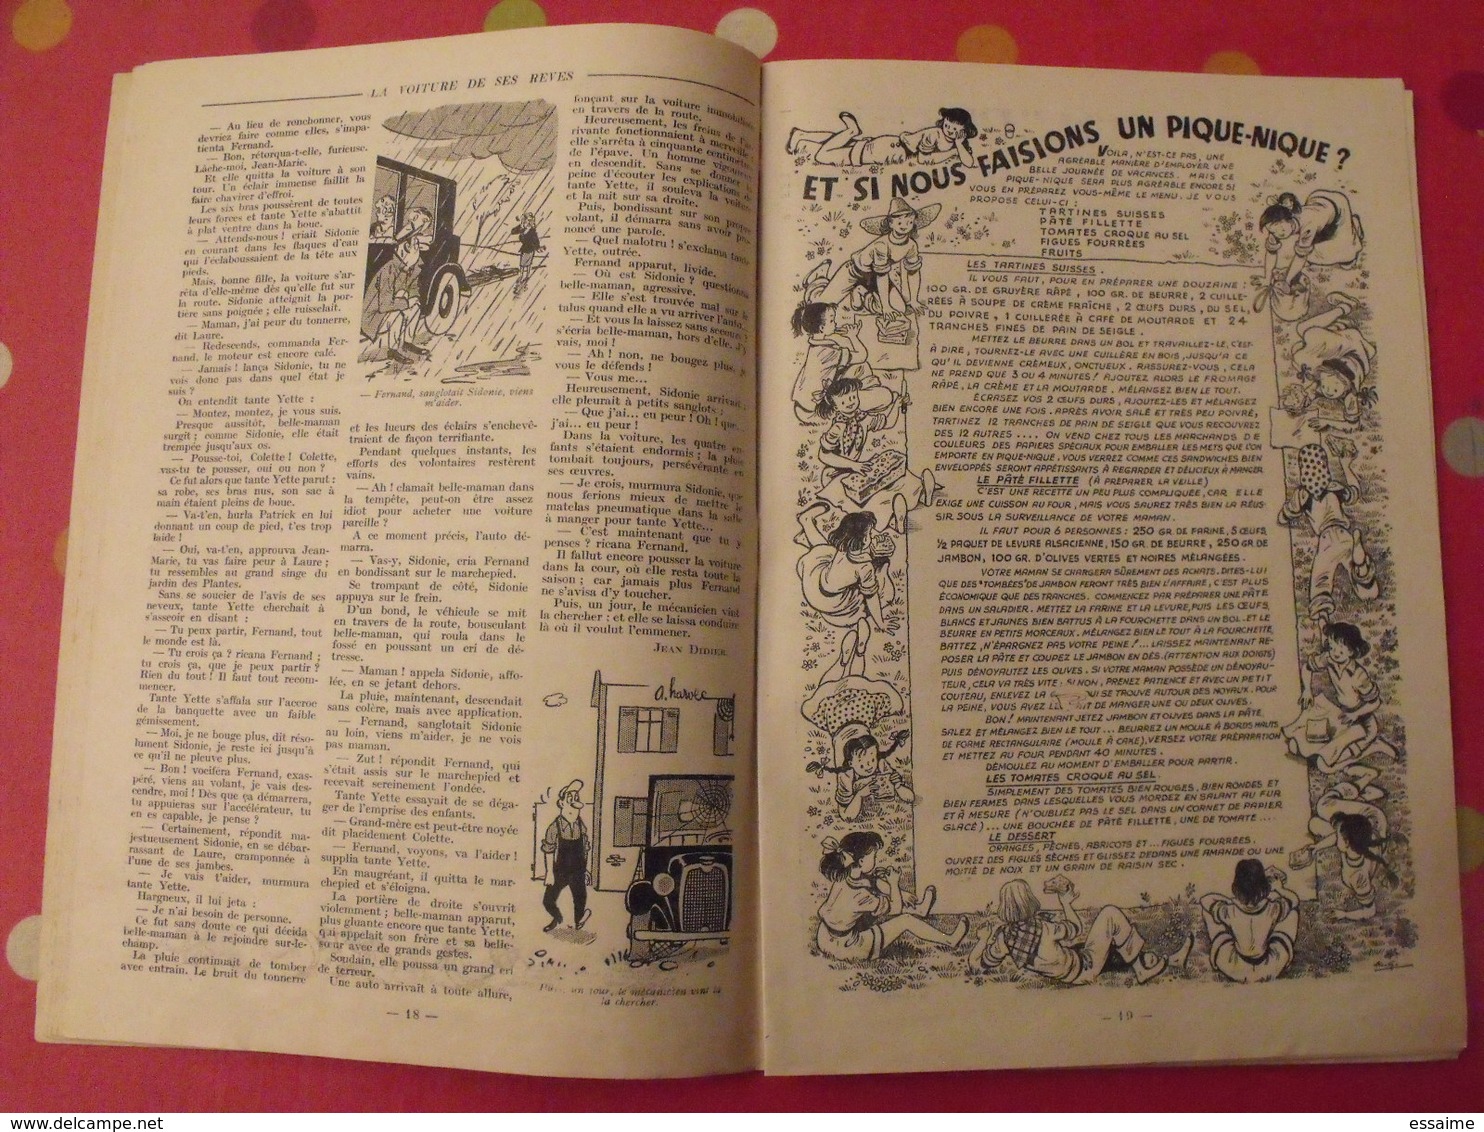 Fillette n° spécial de vacances 1954. 48 pages